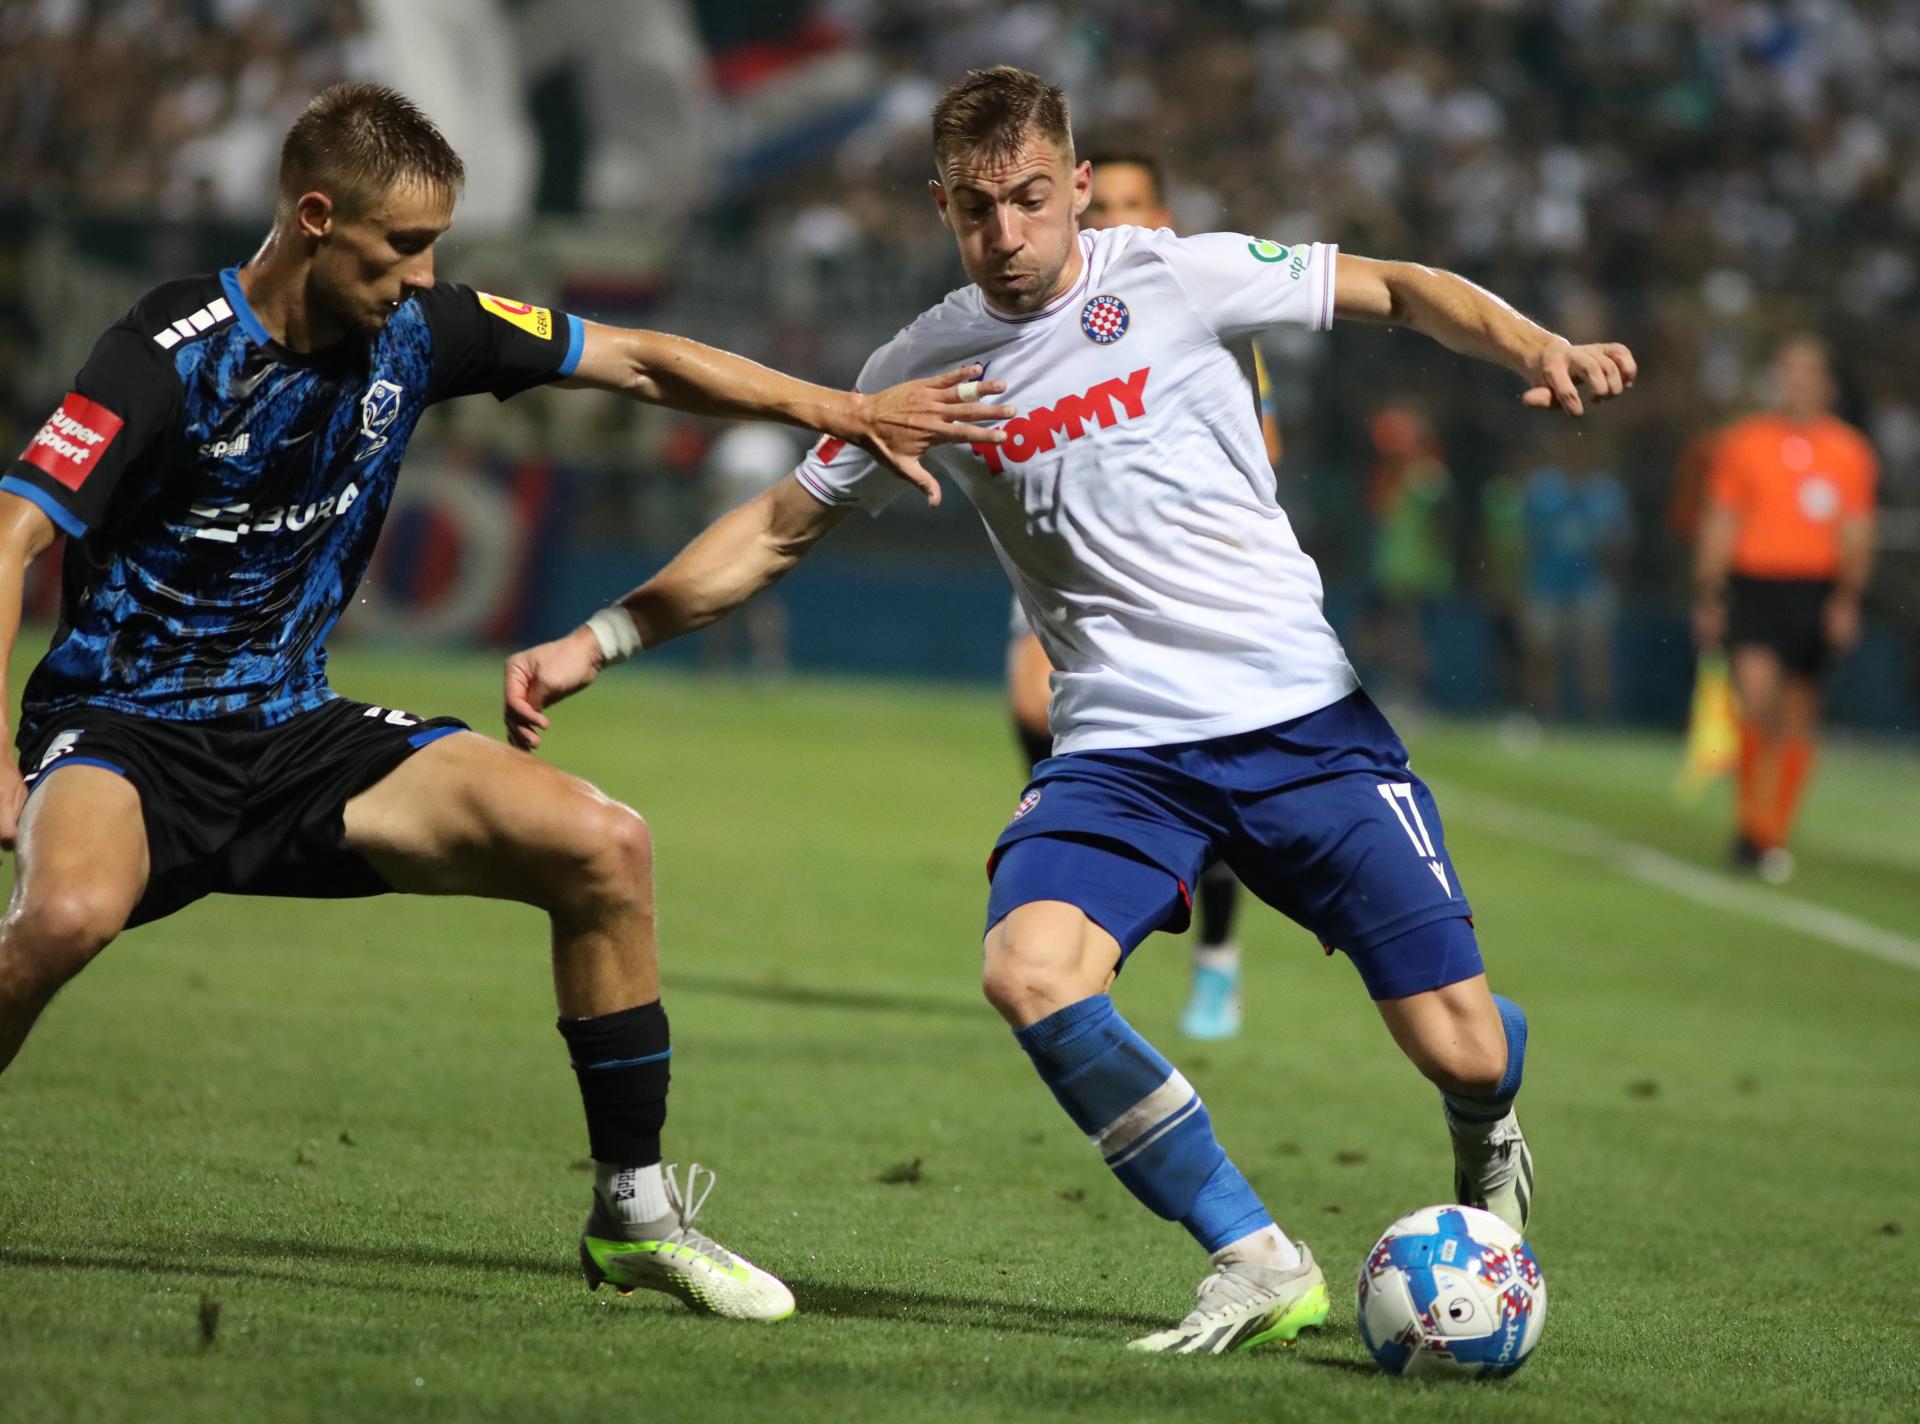 Slobodna Dalmacija - Hajduk nakon drame u Varaždinu došao do nove